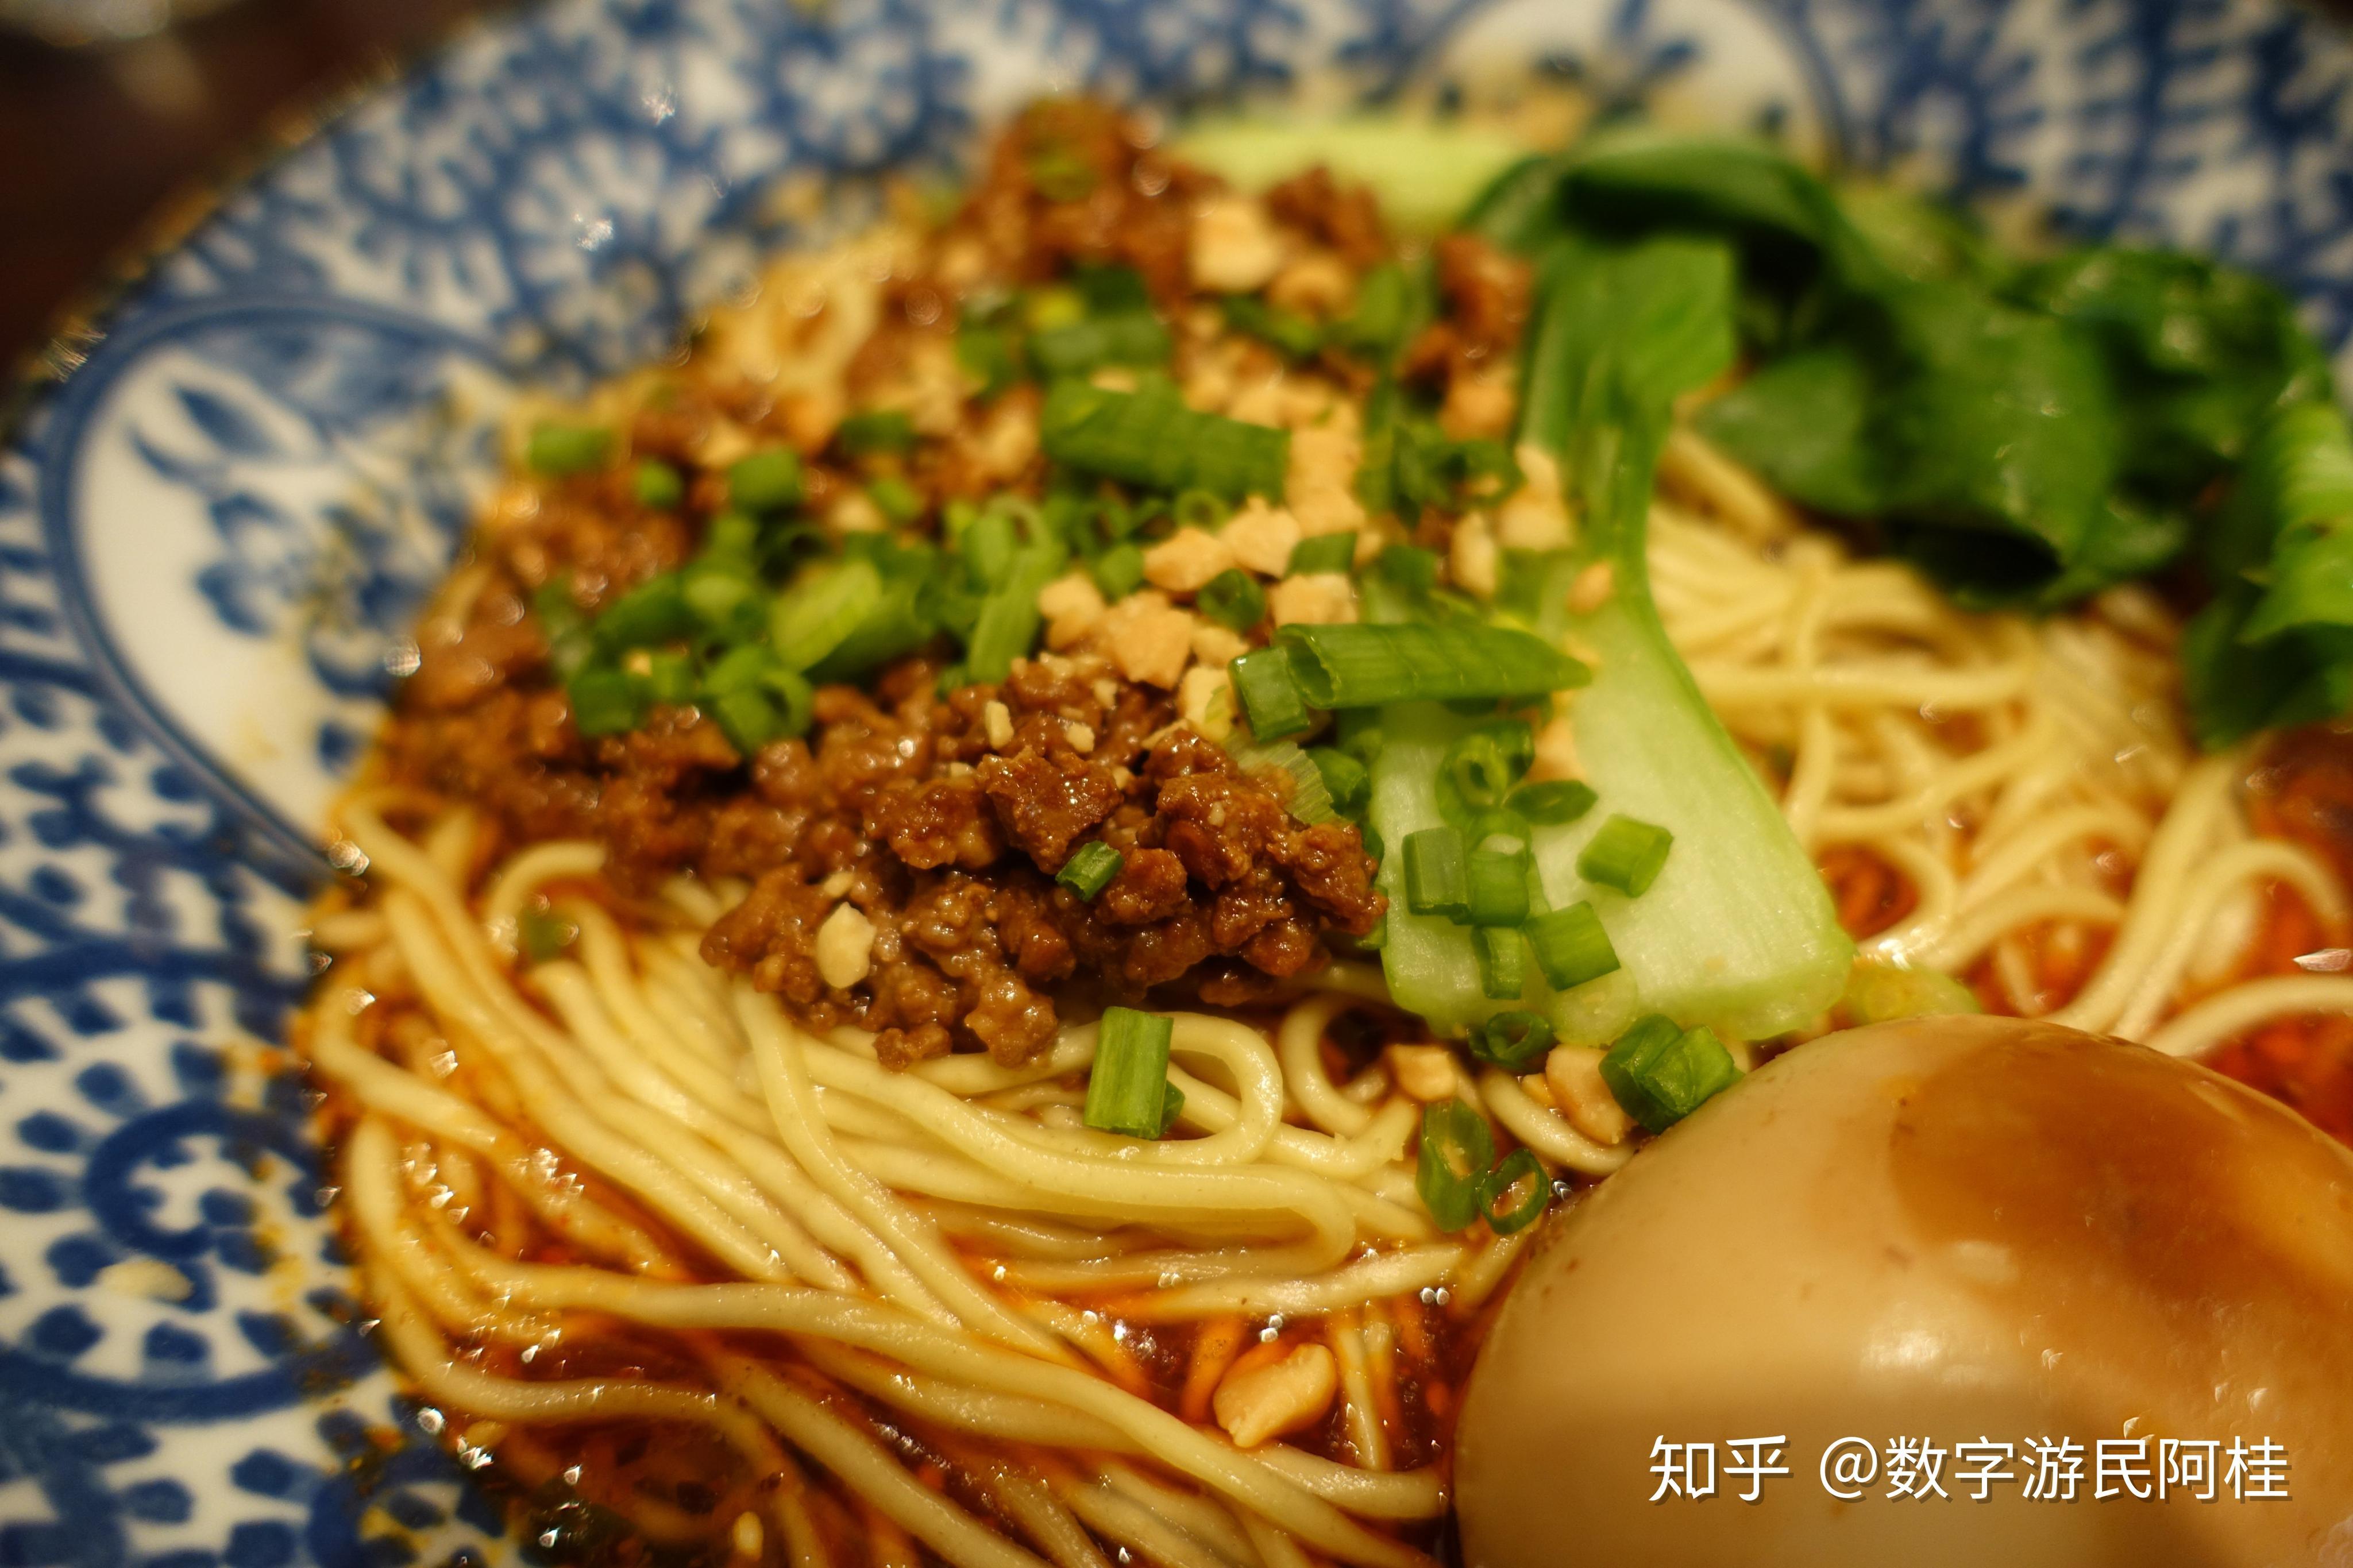 忠县6个特色菜品入选首批“重庆地标菜”_忠县人民政府